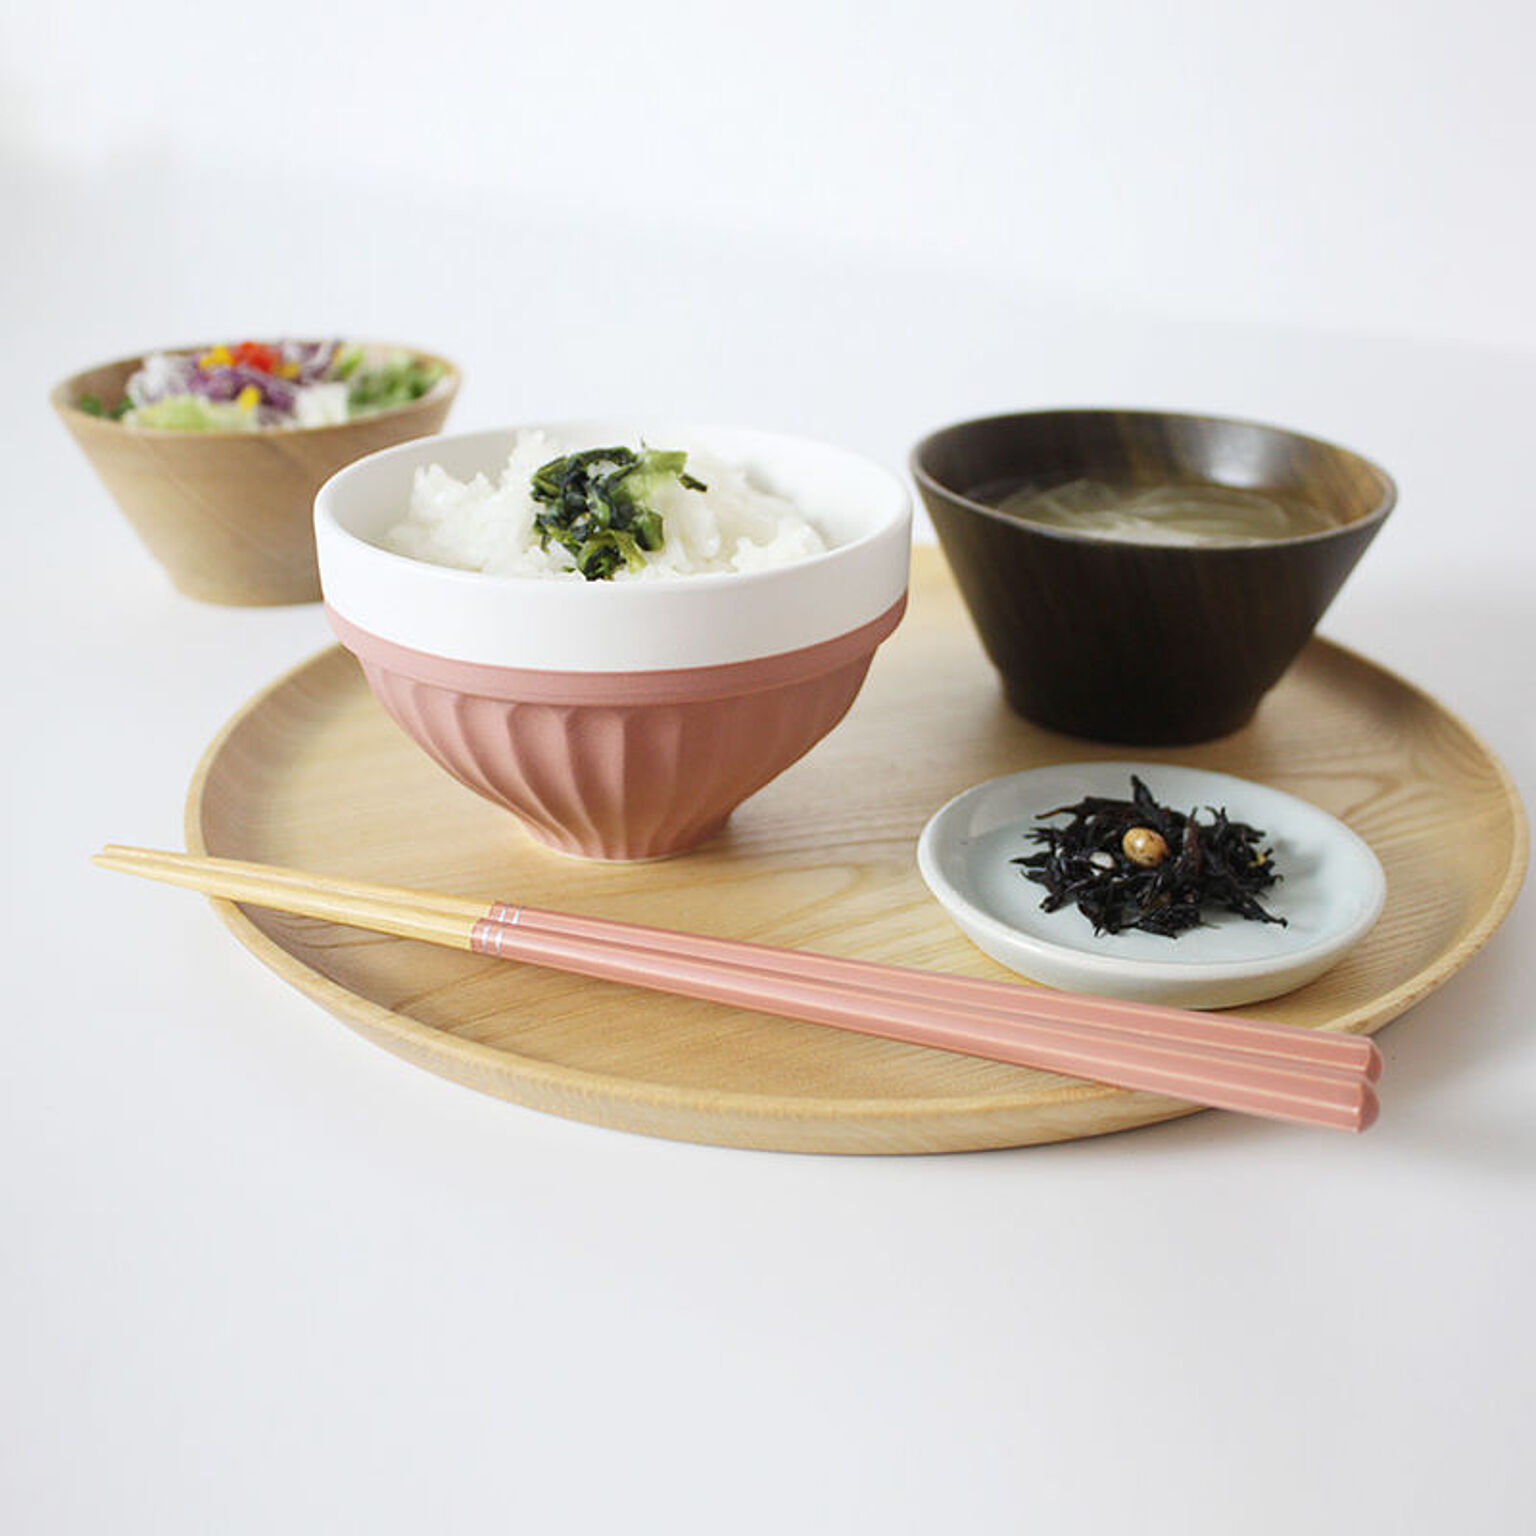 ご飯茶碗 YOHAKU よはく 綺麗にスタッキングができる彩り鮮やかなご飯茶碗 持ちやすさを考慮した形状とスタッキングできるこだわりの精度 使わない時も魅せる美しさが特徴的なお椀